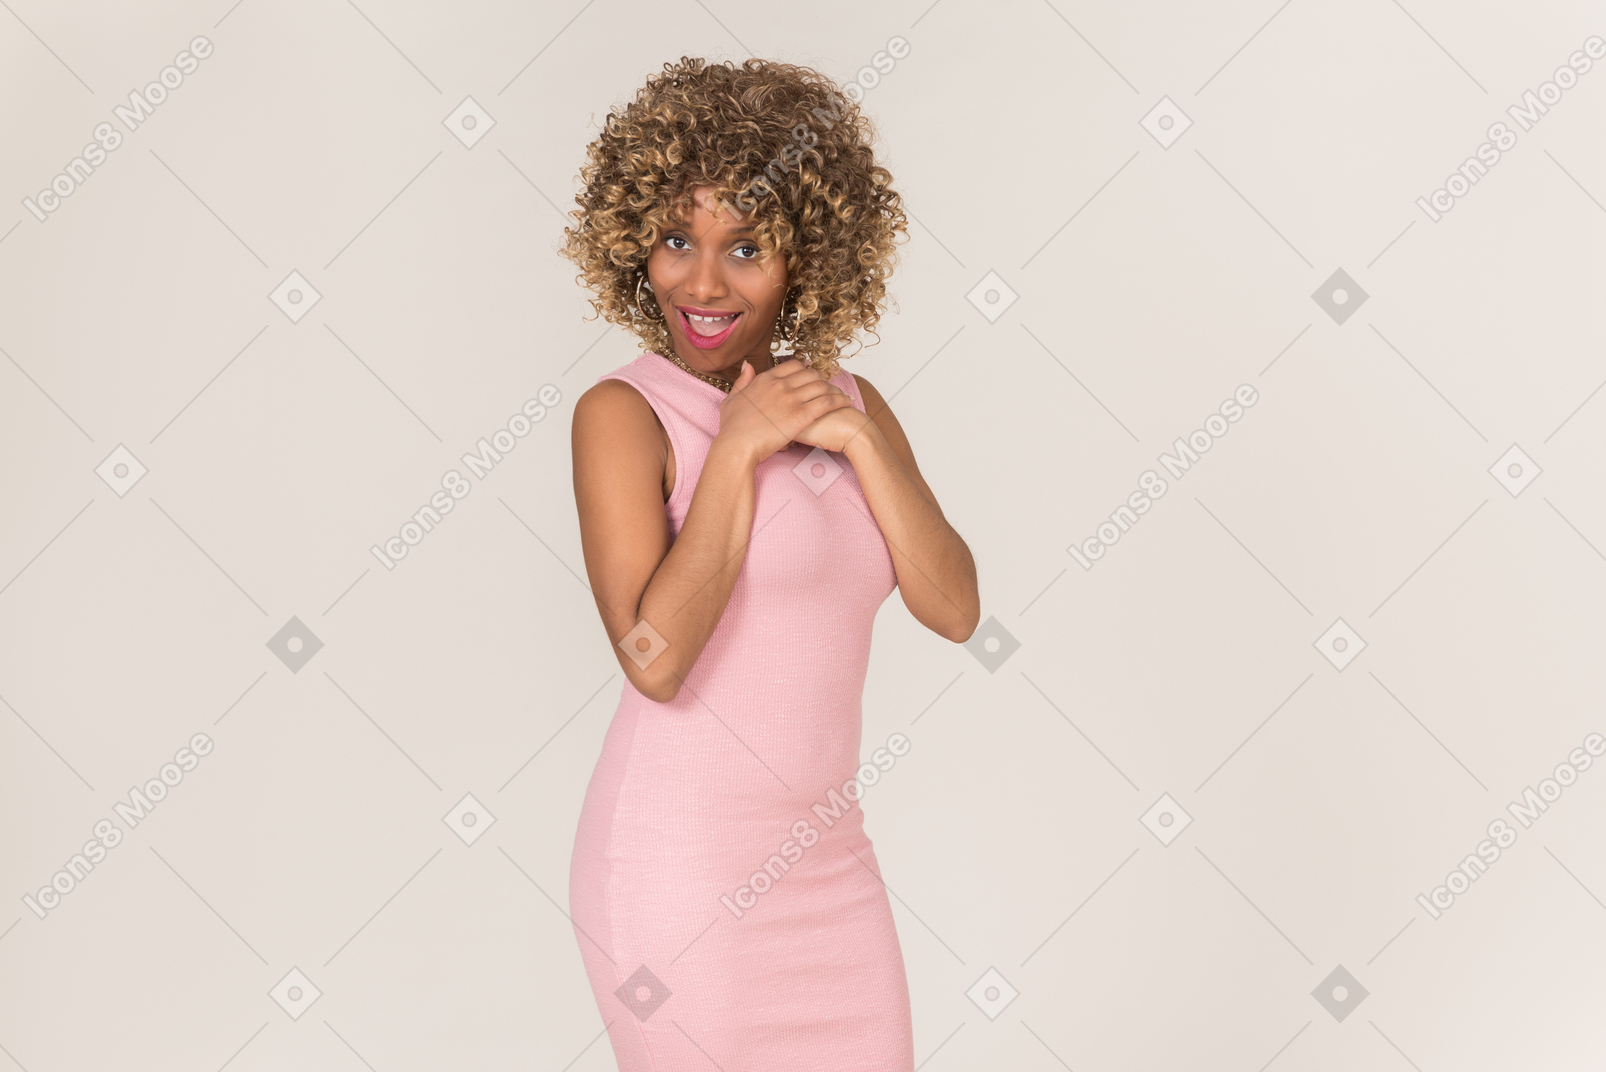 파스텔 핑크색 드레스를 입은 젊은 흑인 보풀머리 여성이 평범한 회색 배경을 배경으로 혼자 즐거운 시간을 보내고 있습니다.